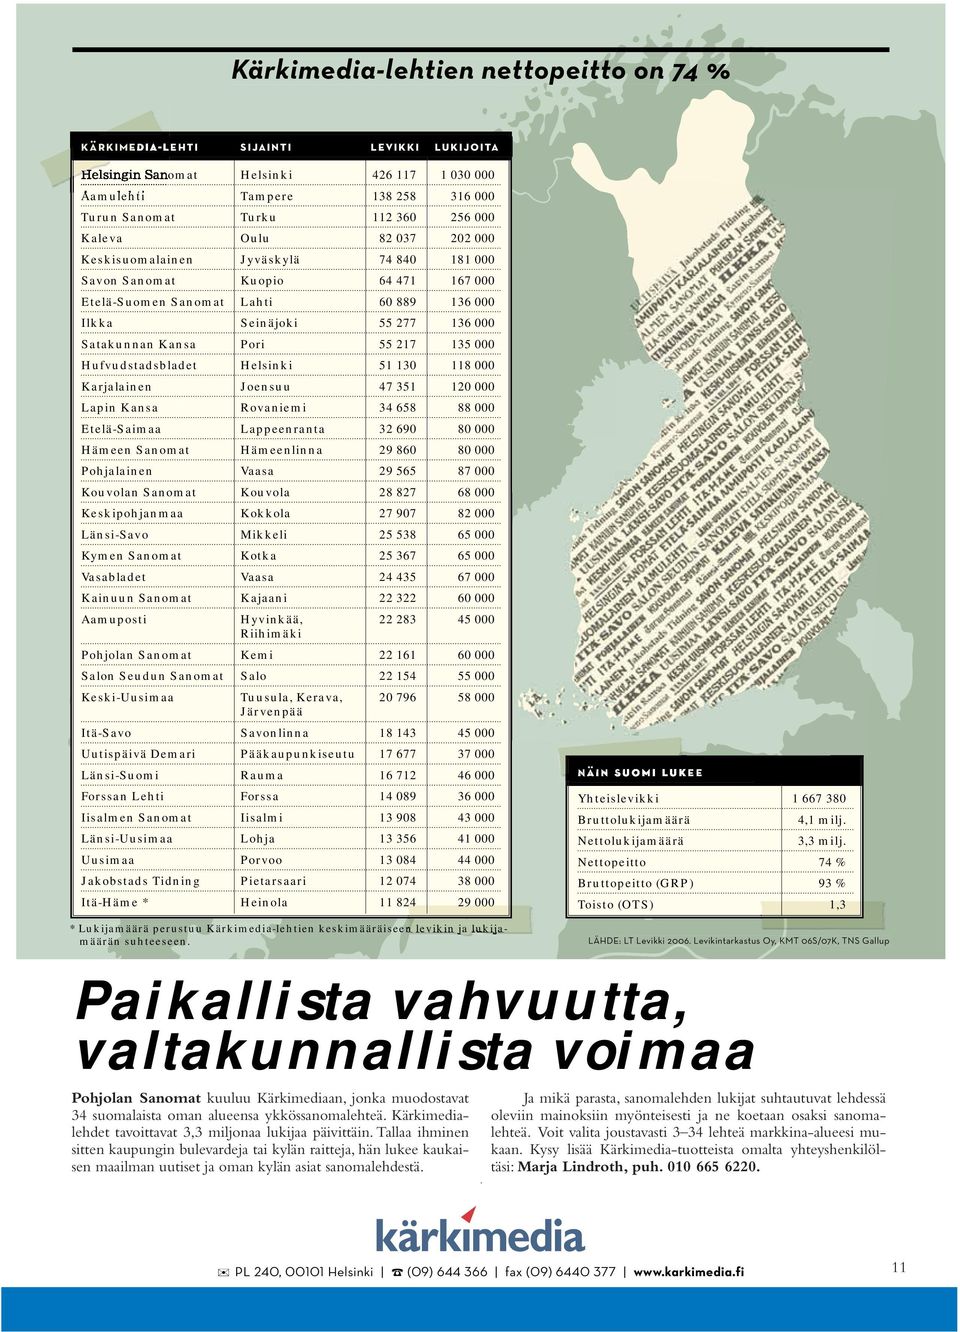 Kansa Rovaniemi 34 658 88 000 Etelä-Saimaa Lappeenranta 32 690 80 000 Hämeen Sanomat Hämeenlinna 29 860 80 000 Pohlainen Vaasa 29 565 87 000 Kouvolan Sanomat Kouvola 28 827 68 000 Keskipohnmaa